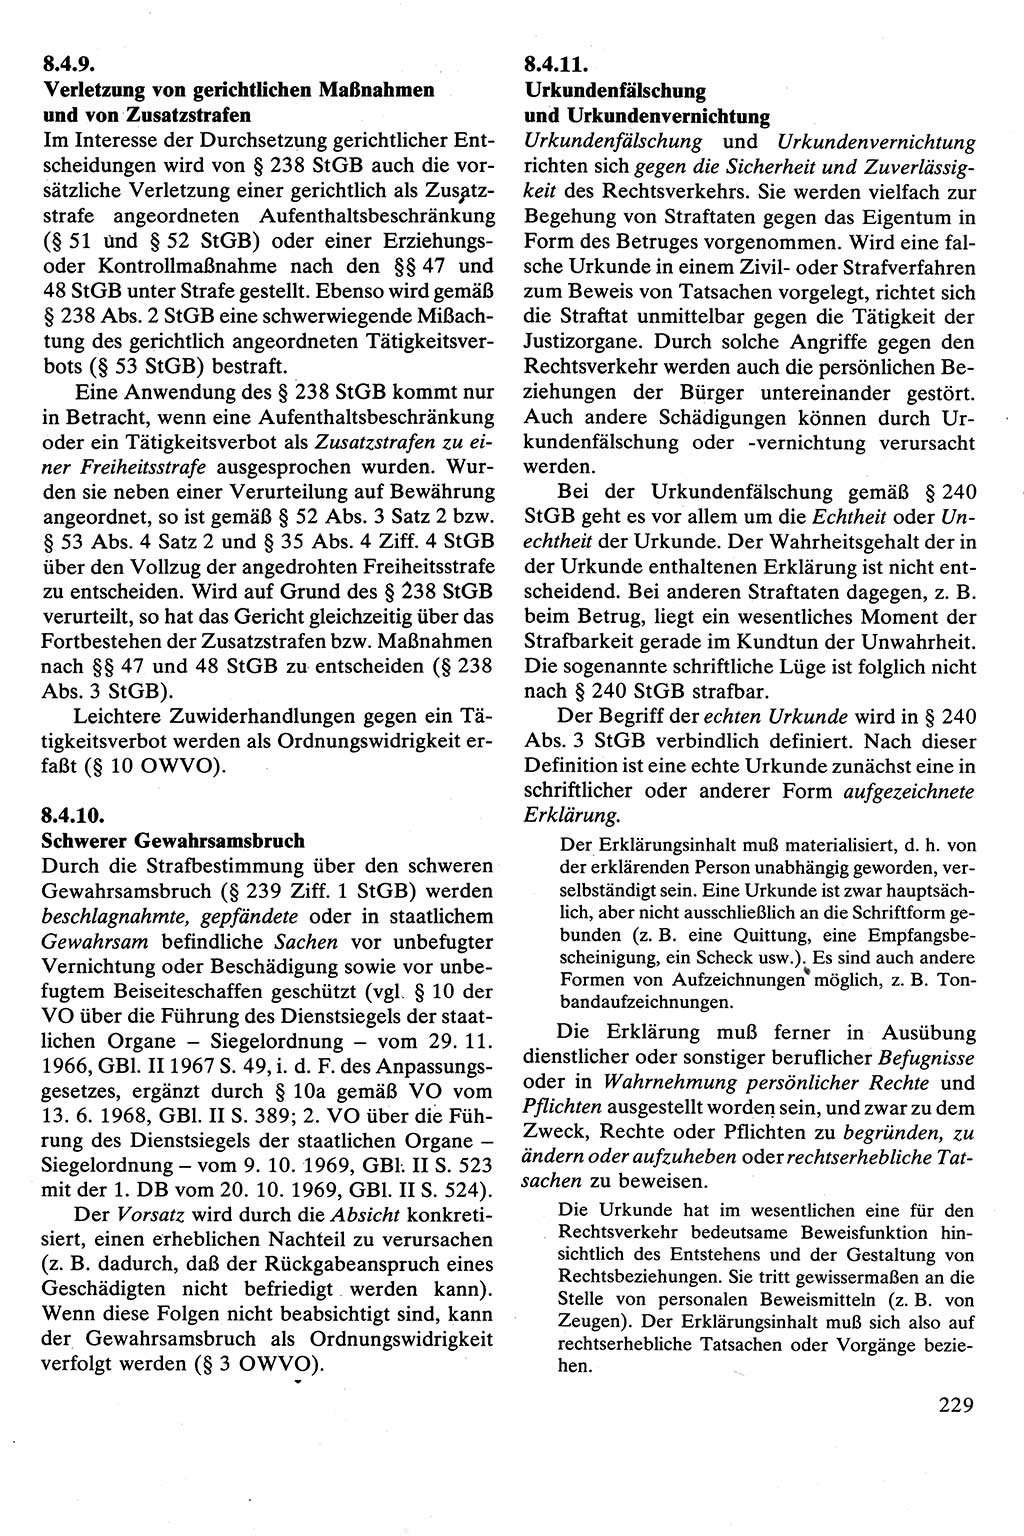 Strafrecht [Deutsche Demokratische Republik (DDR)], Besonderer Teil, Lehrbuch 1981, Seite 229 (Strafr. DDR BT Lb. 1981, S. 229)